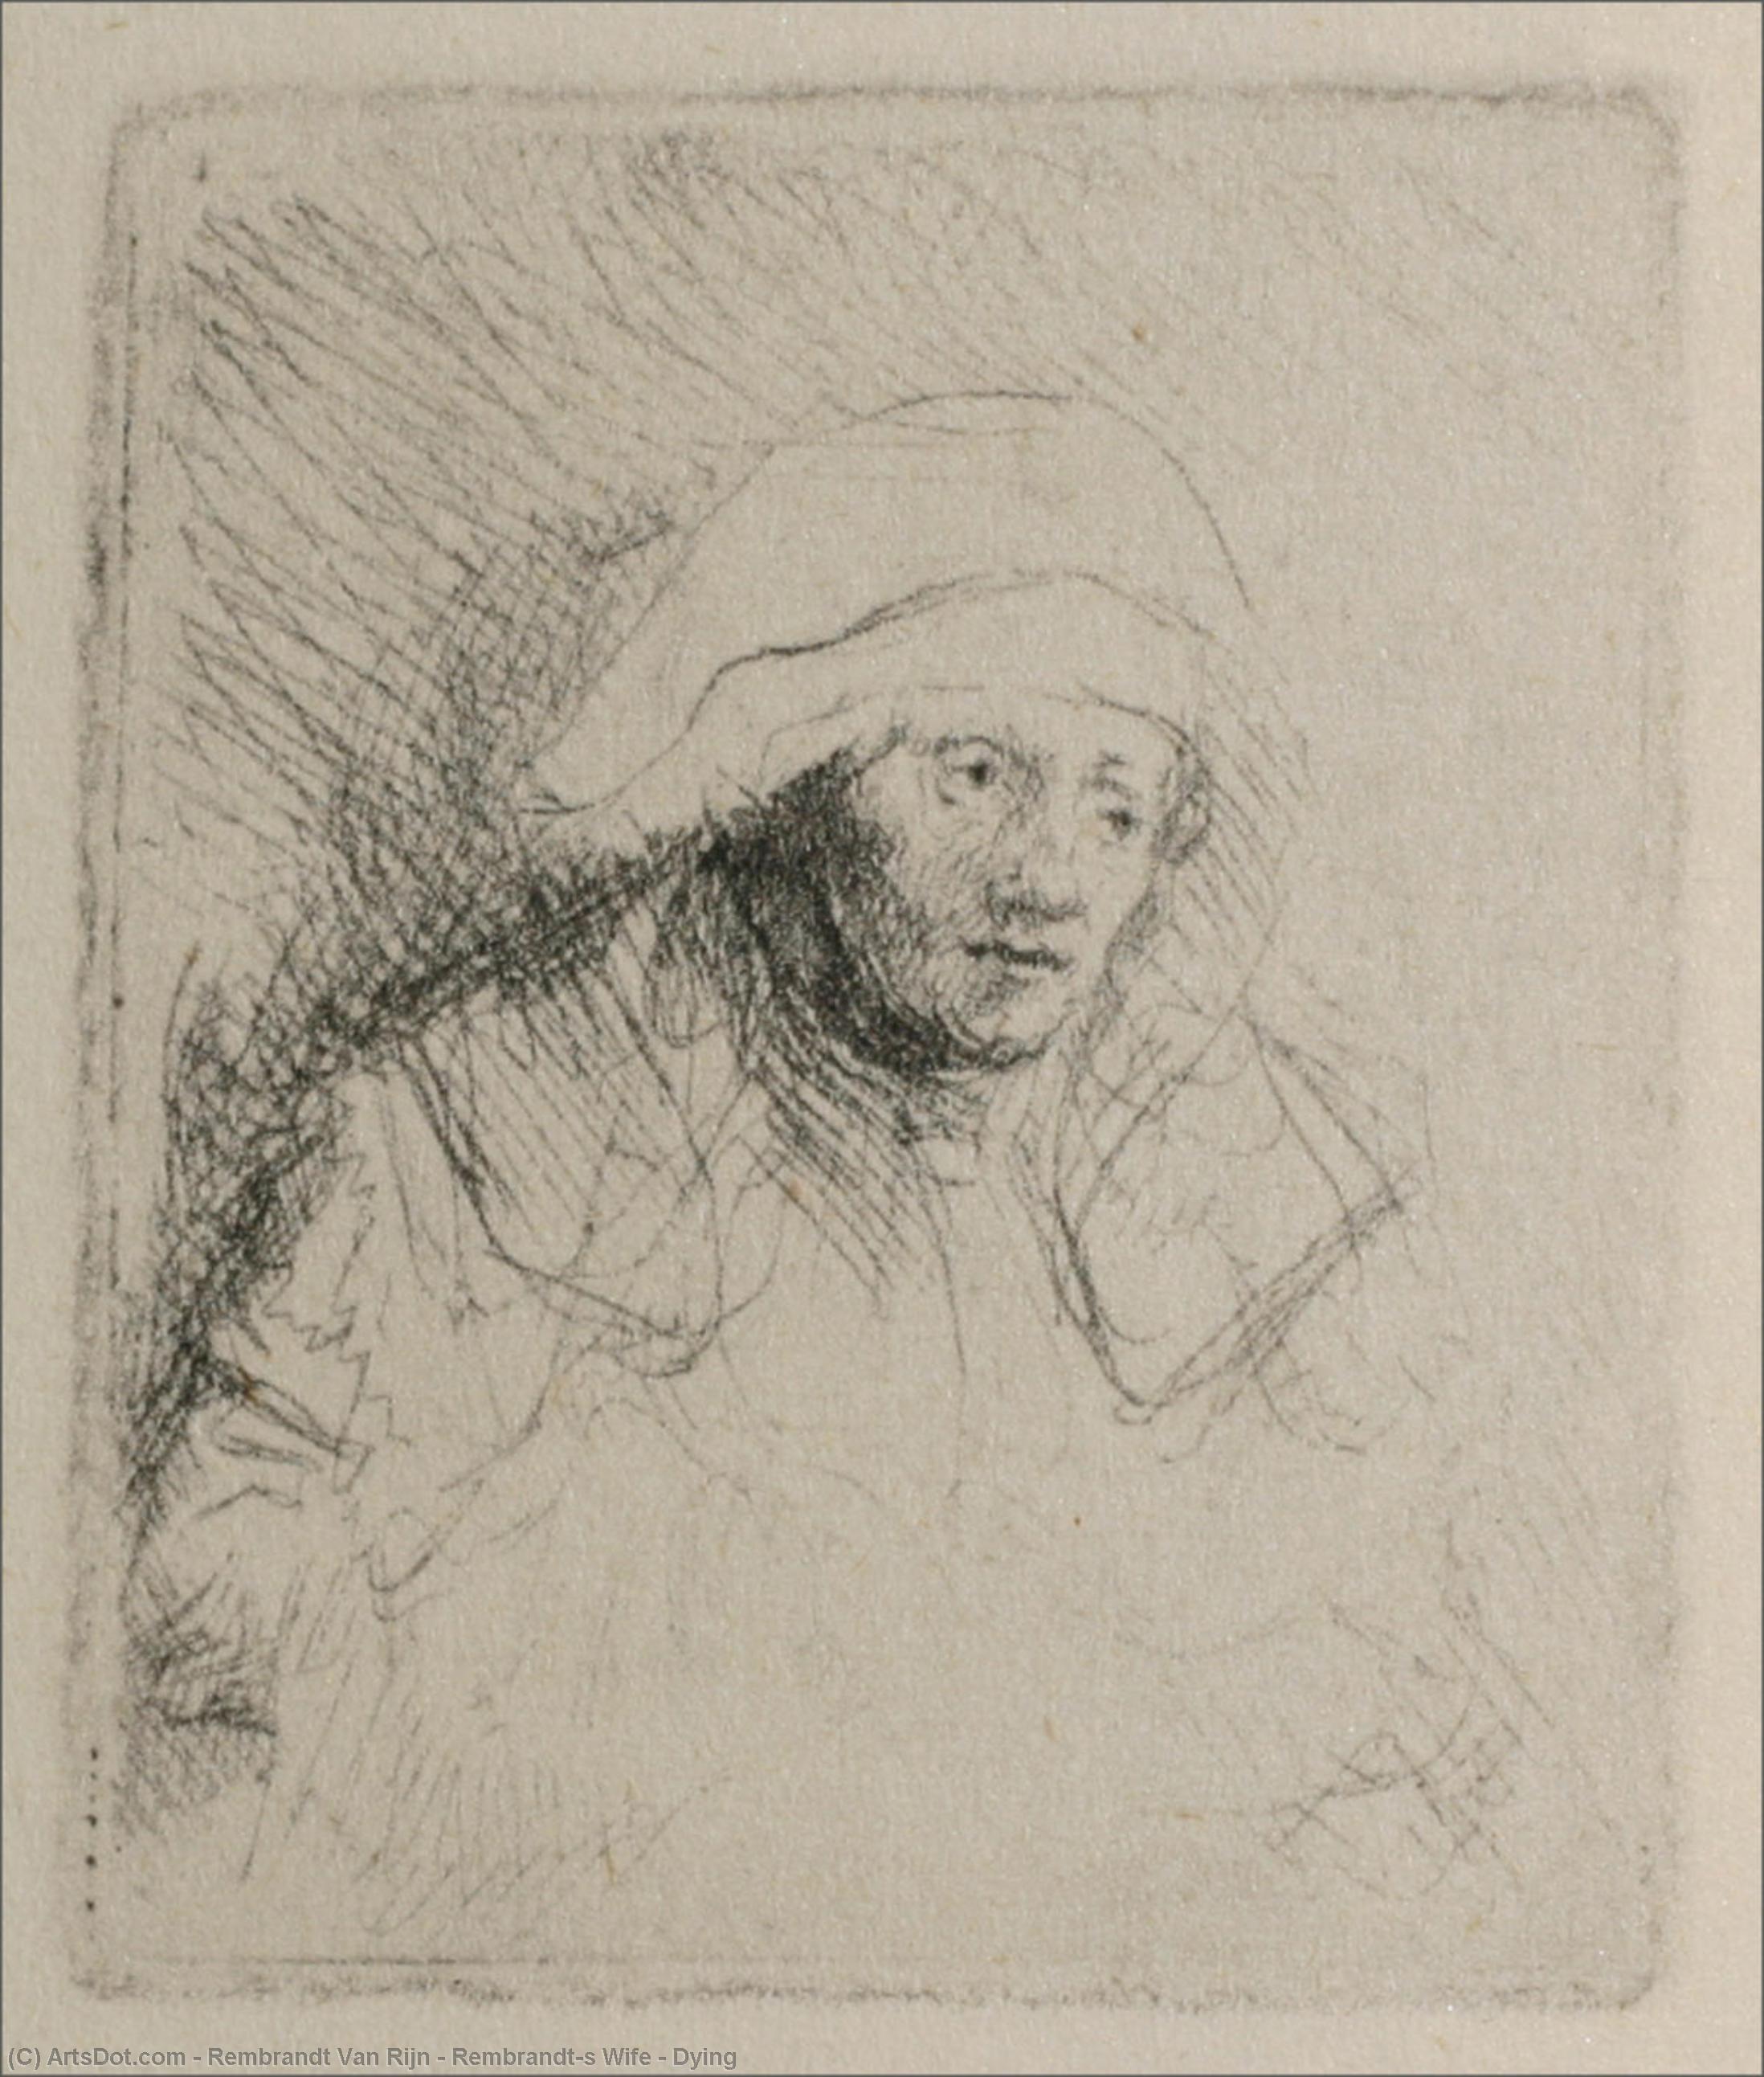 WikiOO.org - Енциклопедия за изящни изкуства - Живопис, Произведения на изкуството Rembrandt Van Rijn - Rembrandt's Wife - Dying